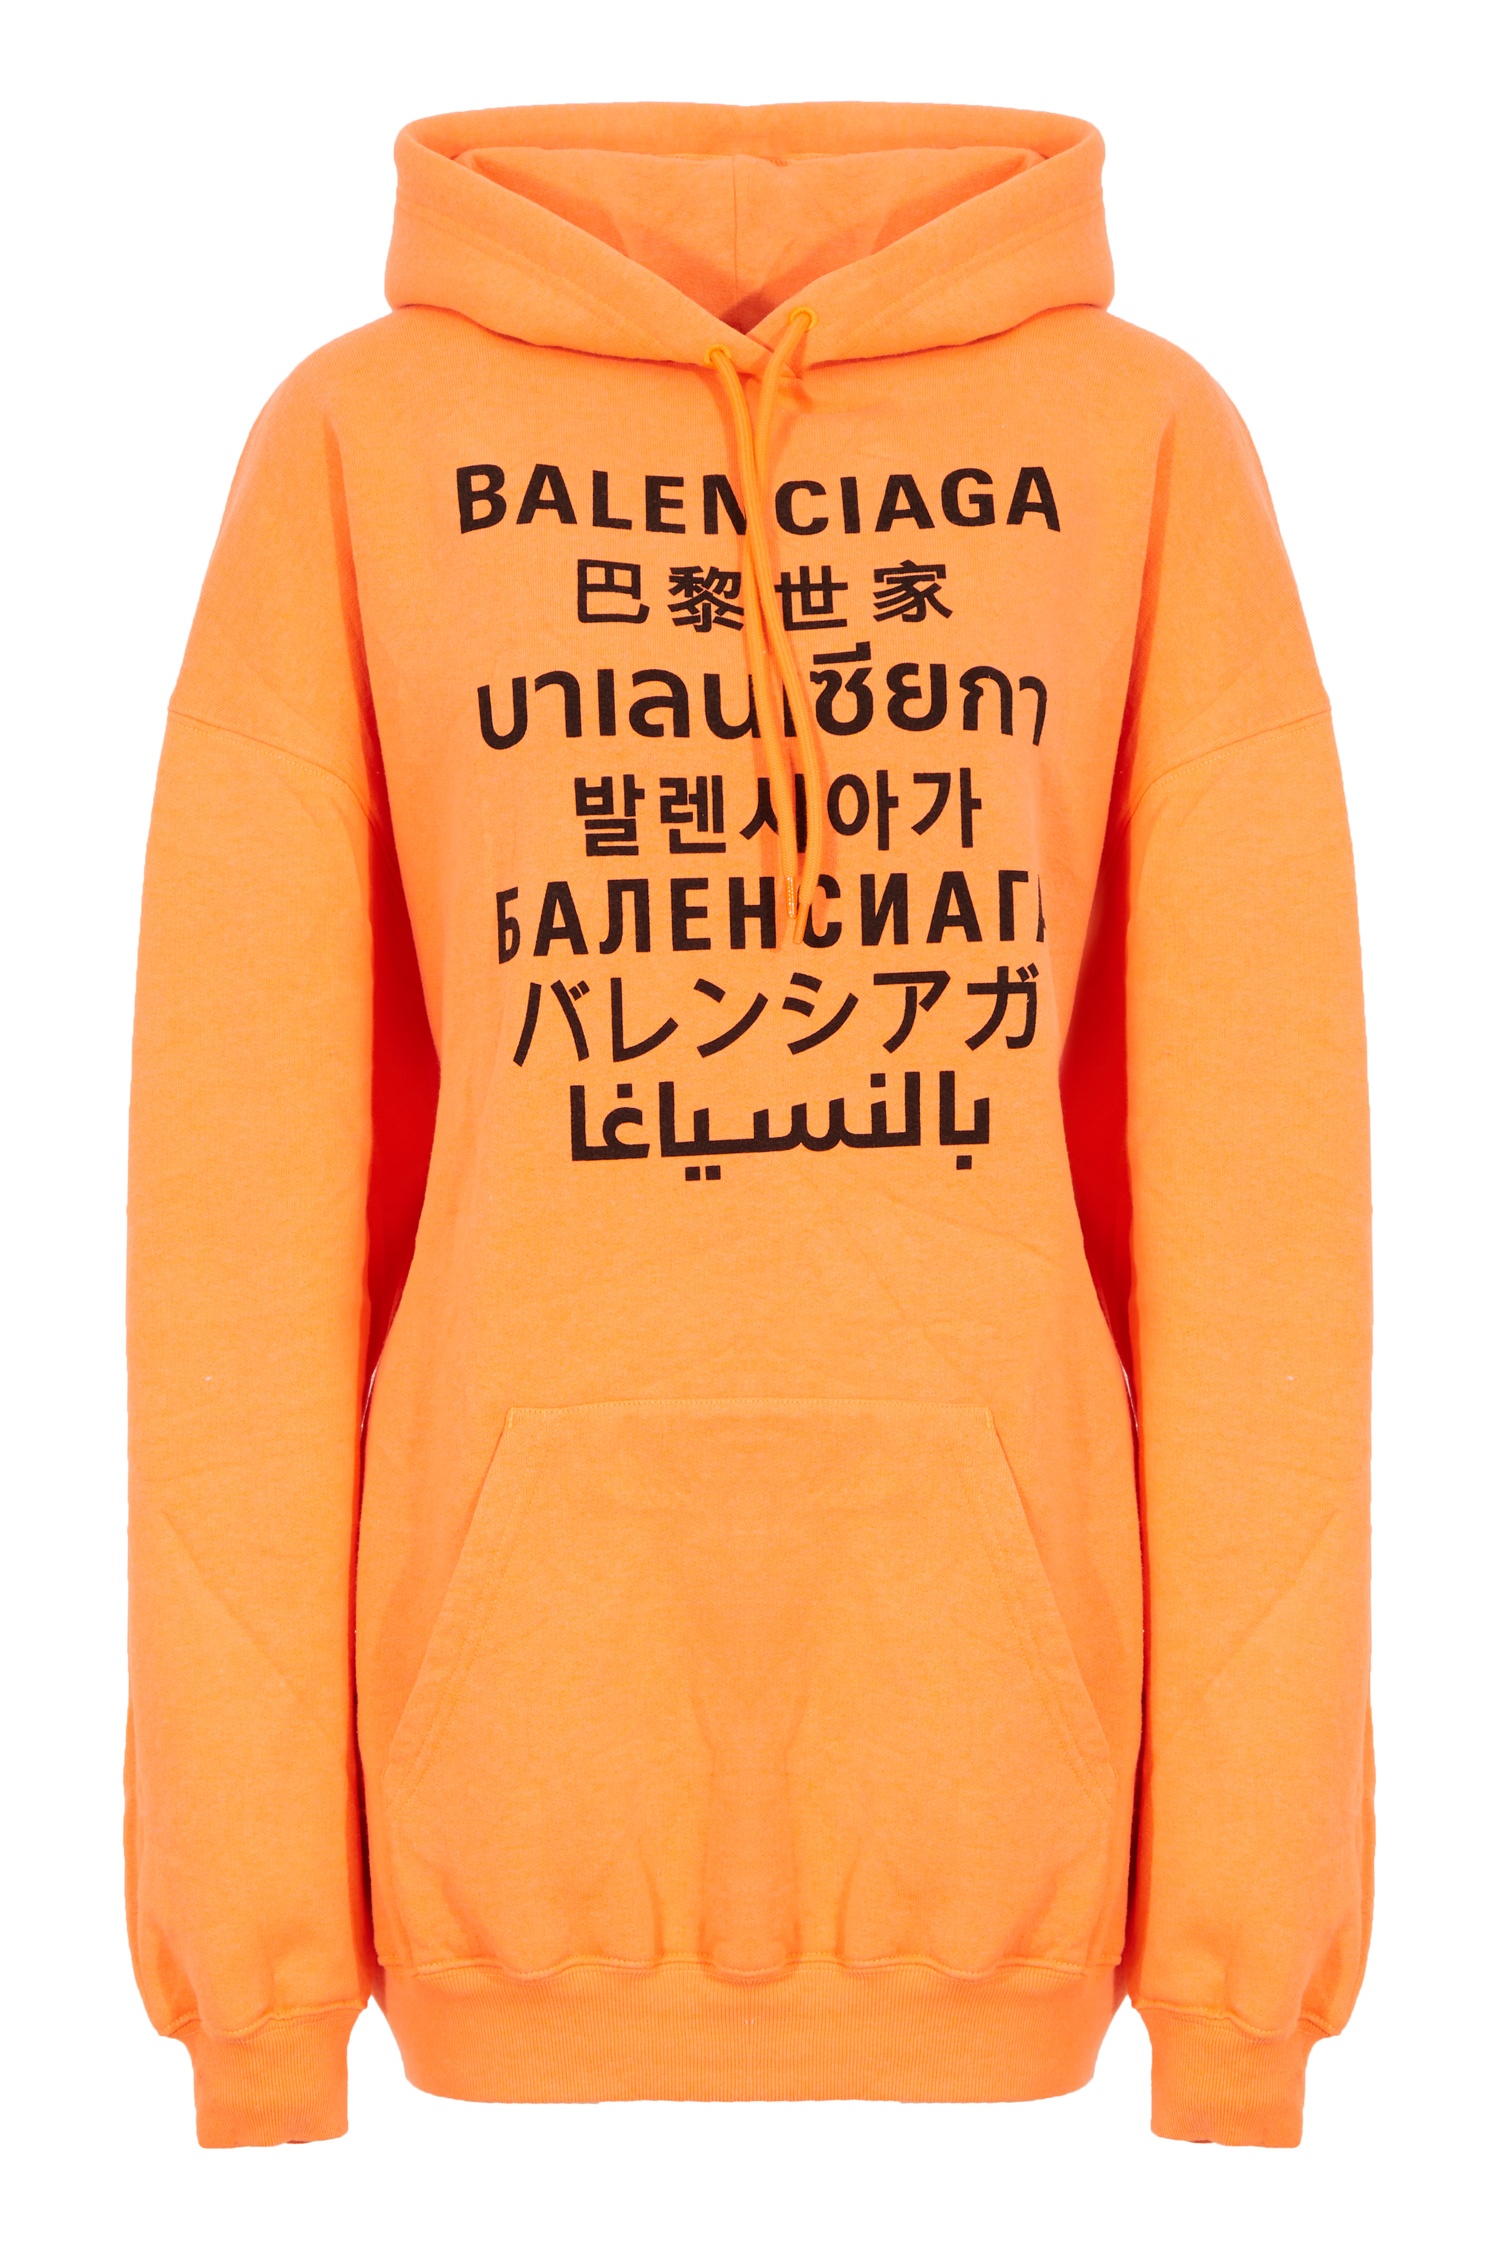 Оранжевое худи с надписями Languages Balenciaga | Баленсиага купить в